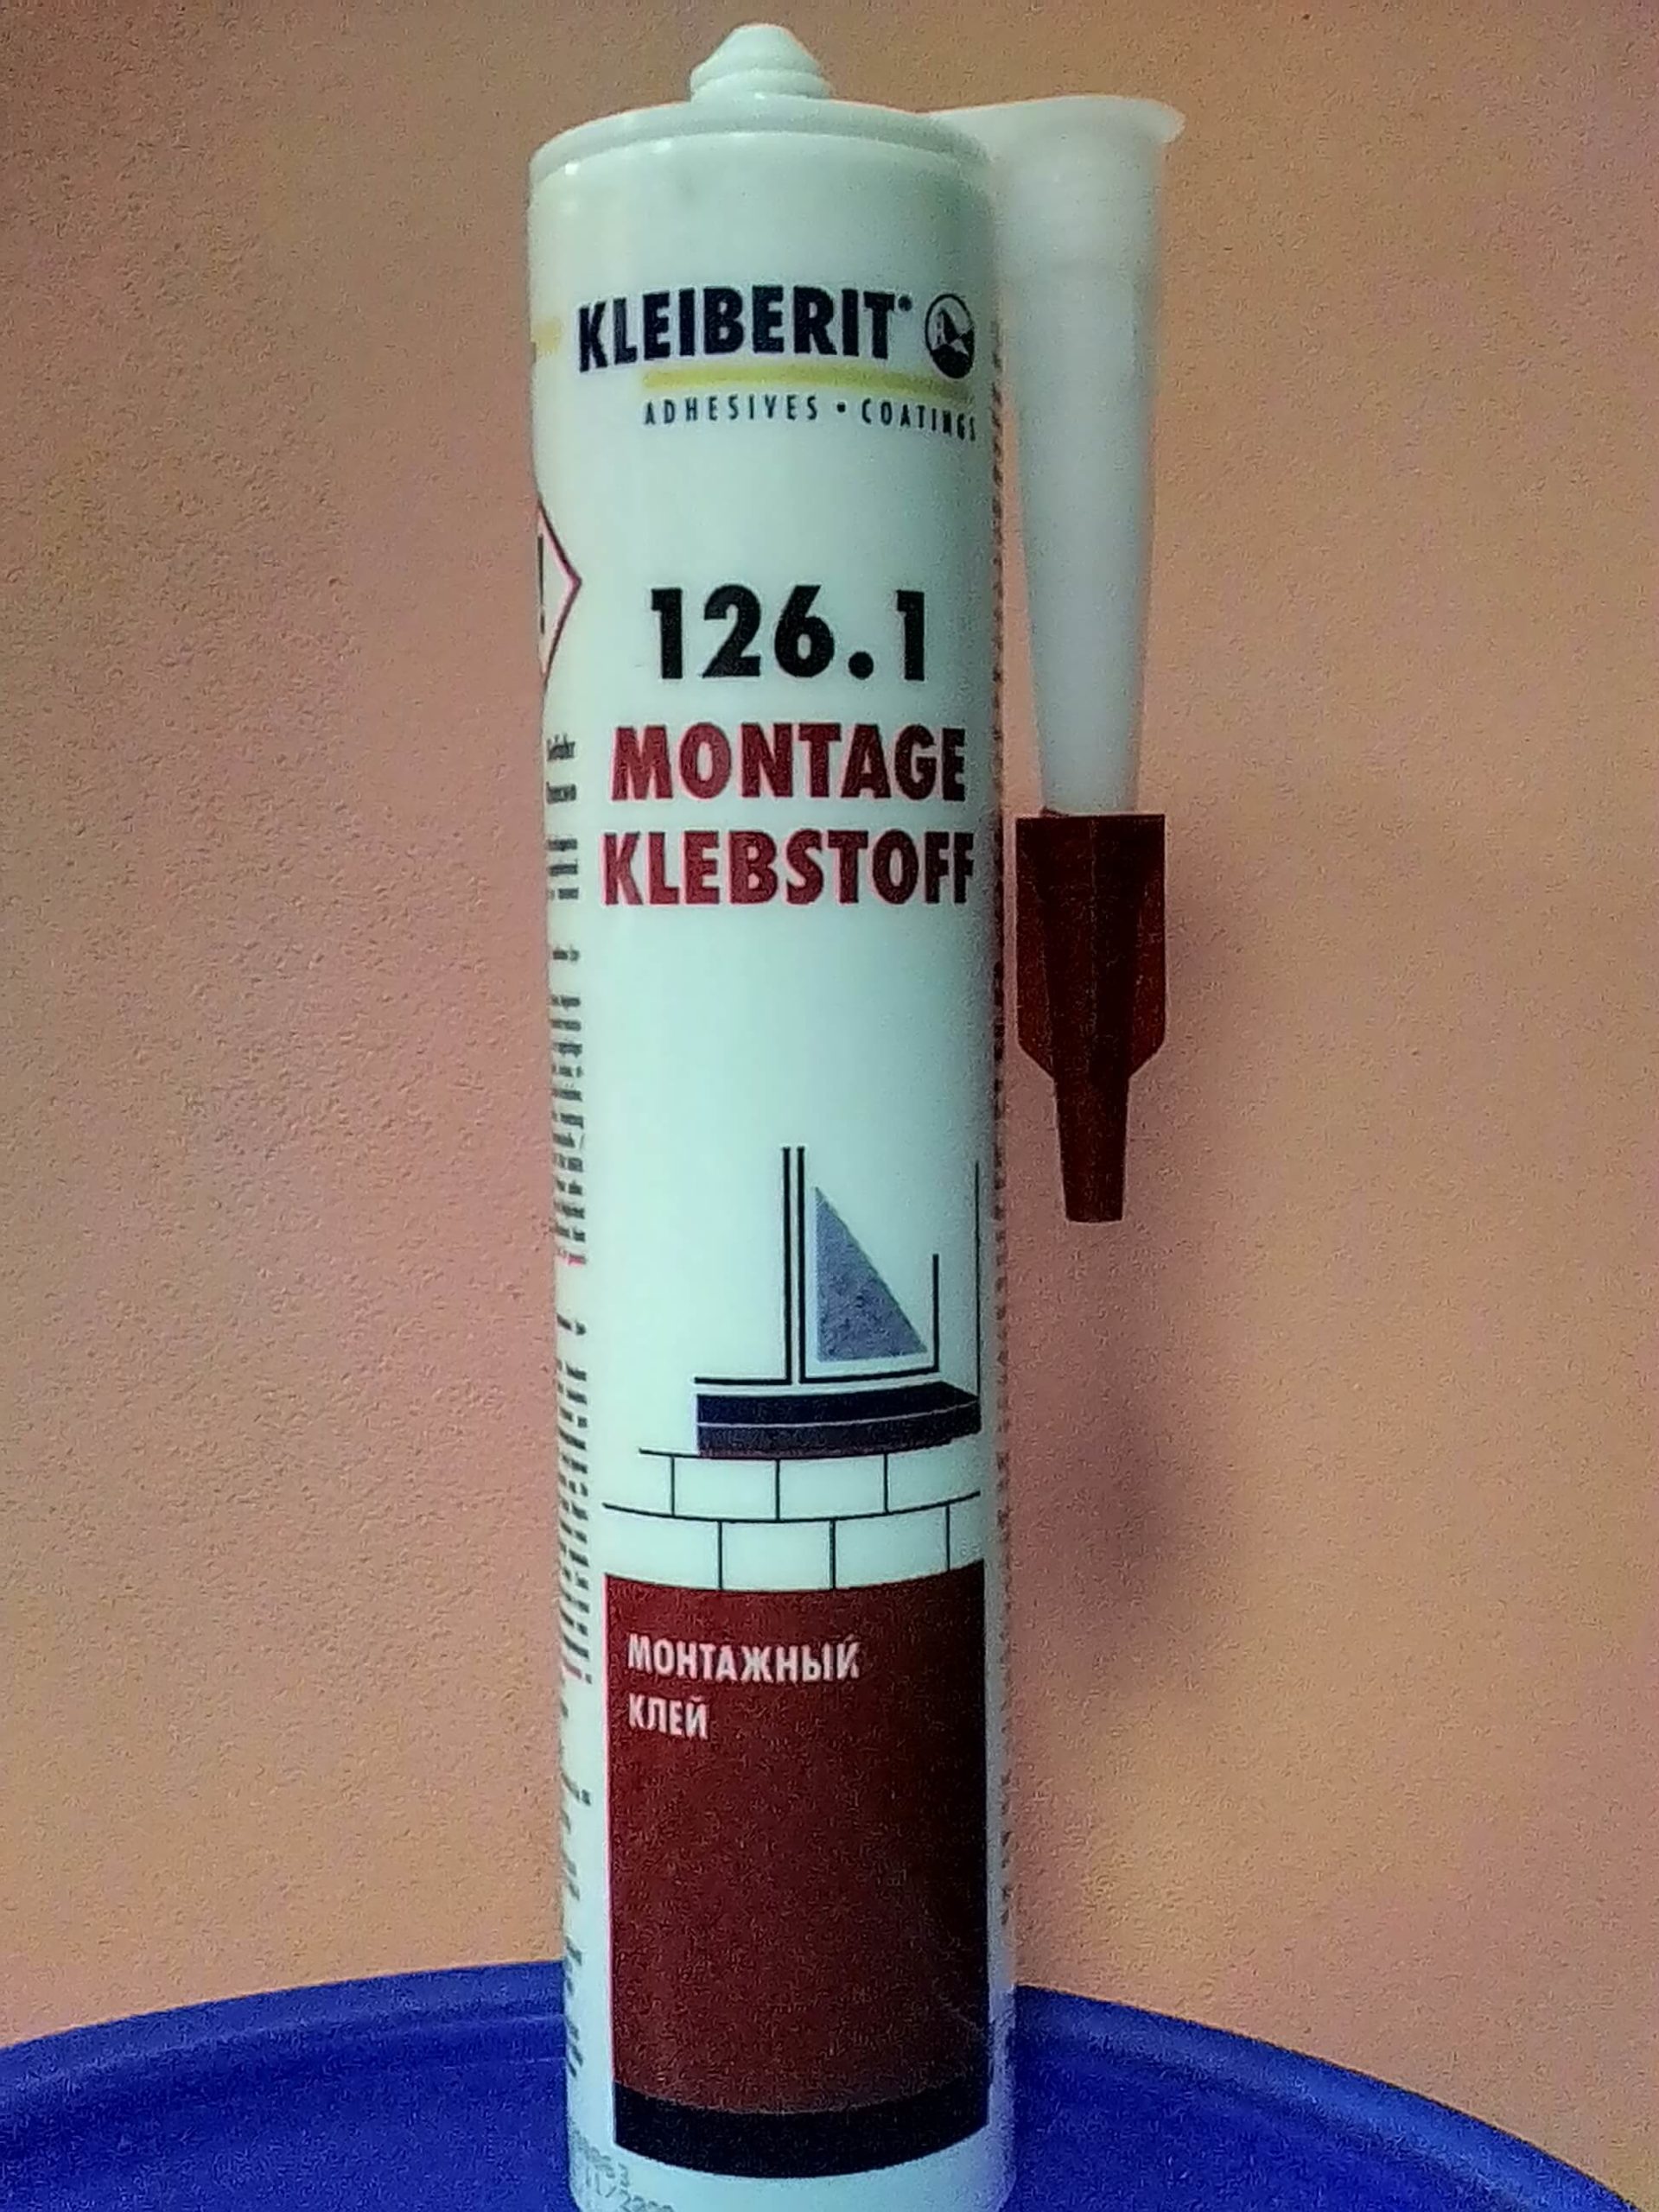  монтажный Kleiberit 126.1, упаковка 0,34 (Германия) -  в .